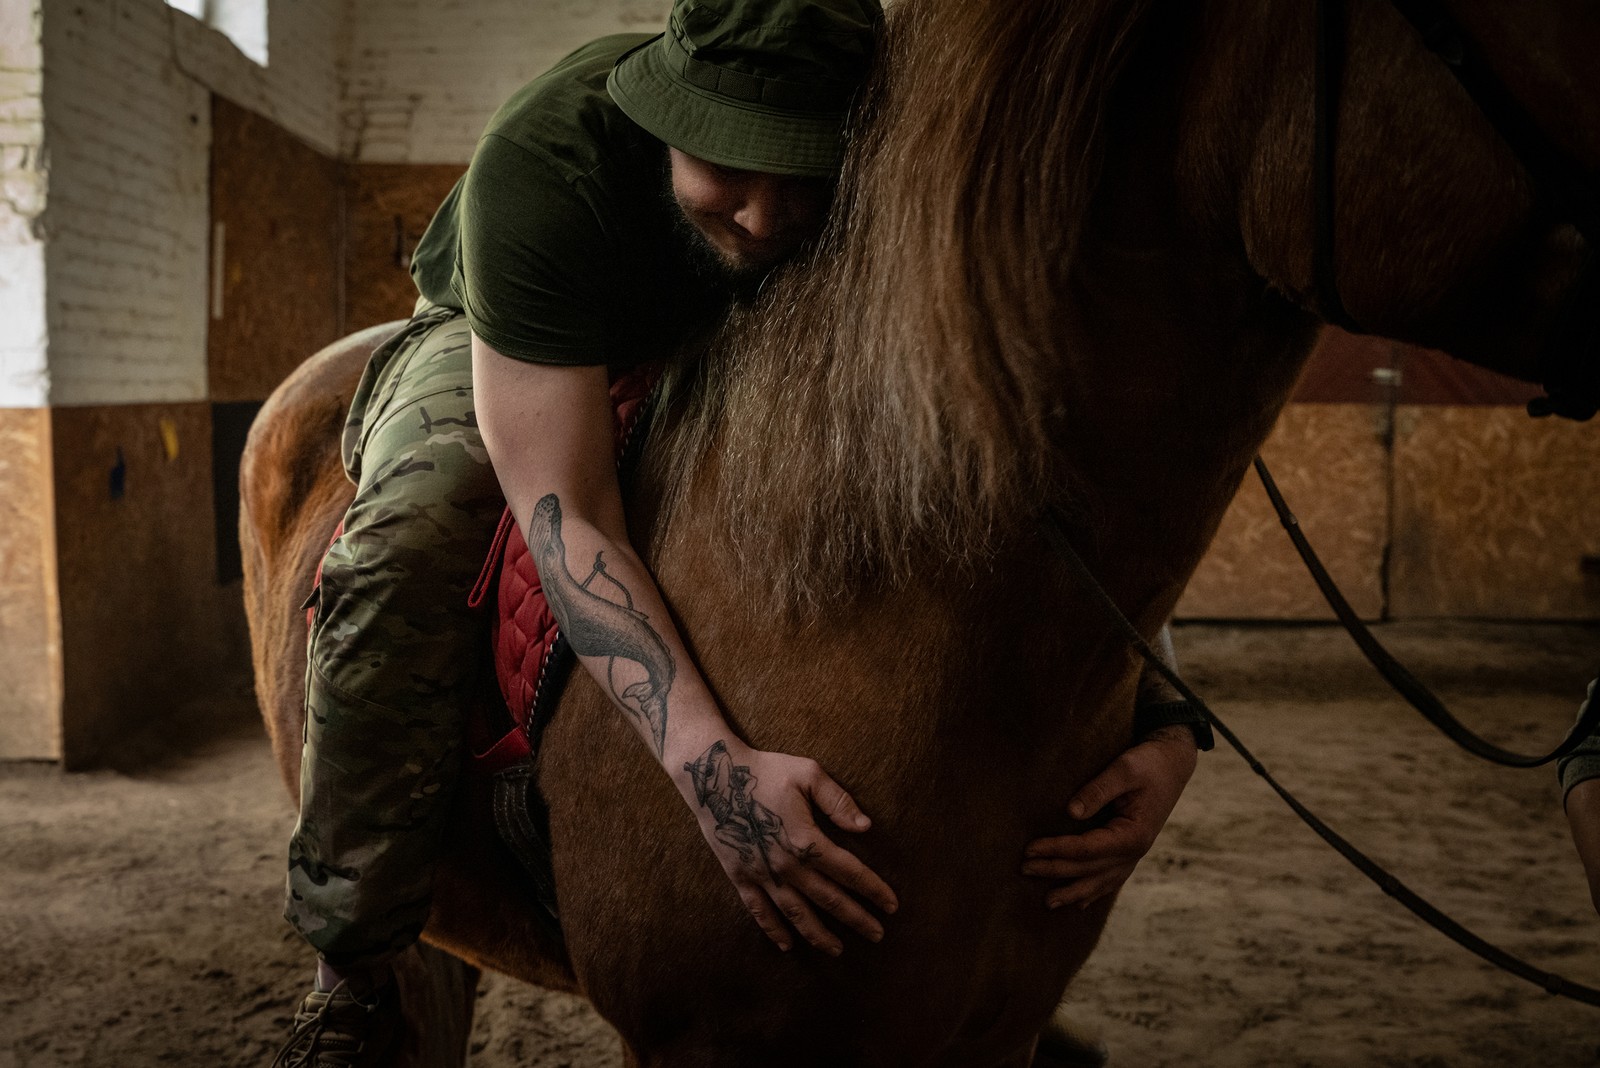 Soldado ucraniano abraça um cavalo durante uma sessão de terapia em um centro de reabilitação na Ucrânia — Foto: Nicole Tung/The New York Times